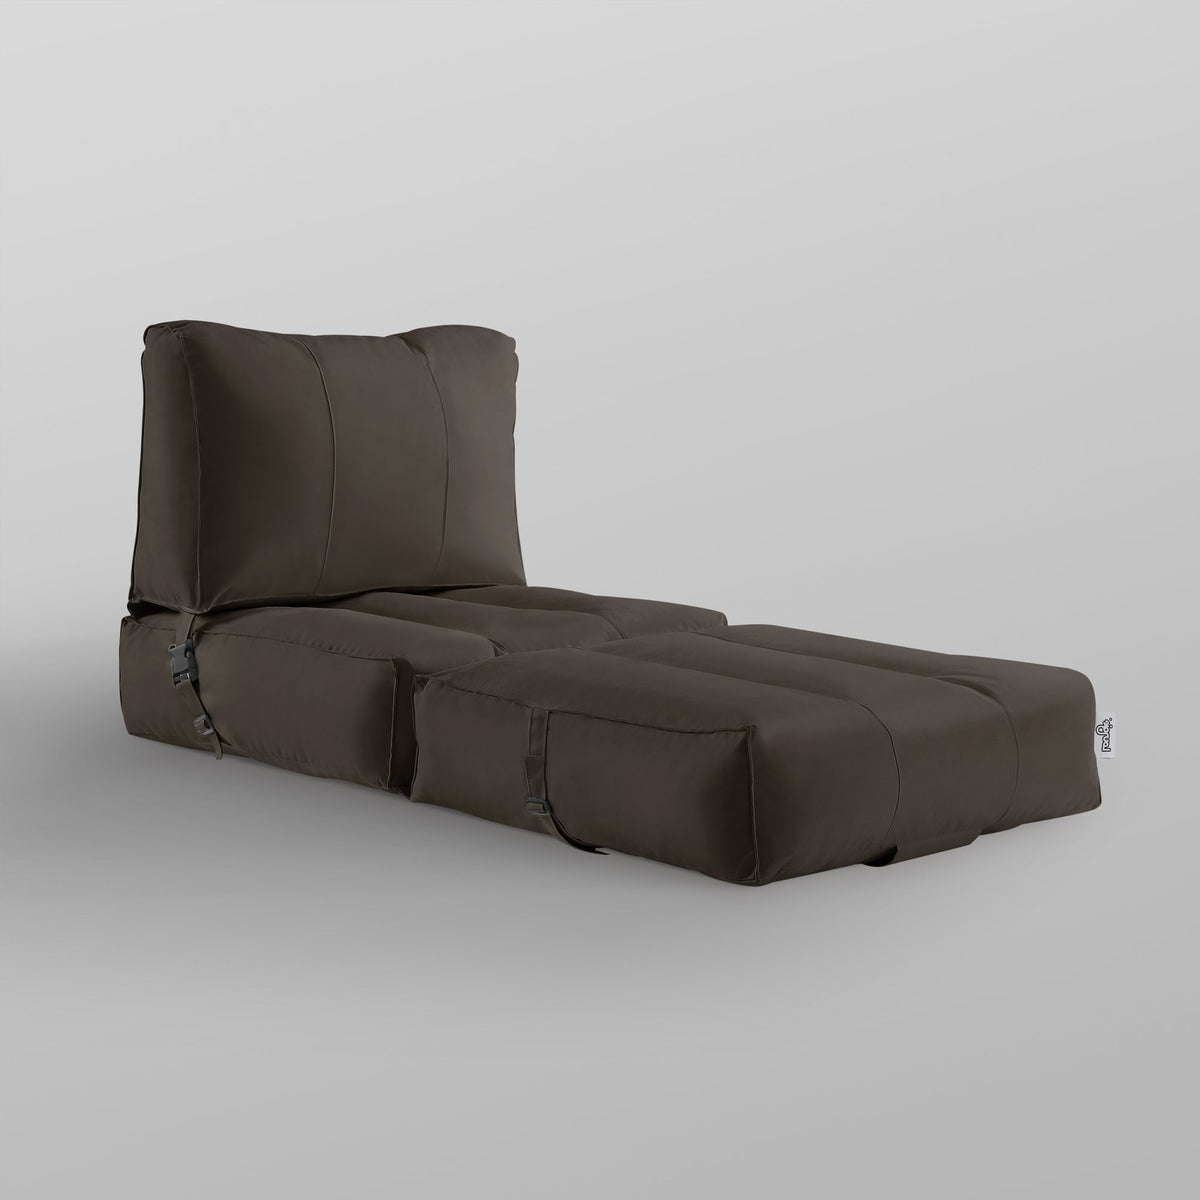 Bean Bag Chair/ Foam Sofa/ Lounge Convertable Chair/ Sleeper Chair/ Memory Foam Sofa/ Flip Chair - Cloudy Bean Bag Convertible Memory Foam Sofa